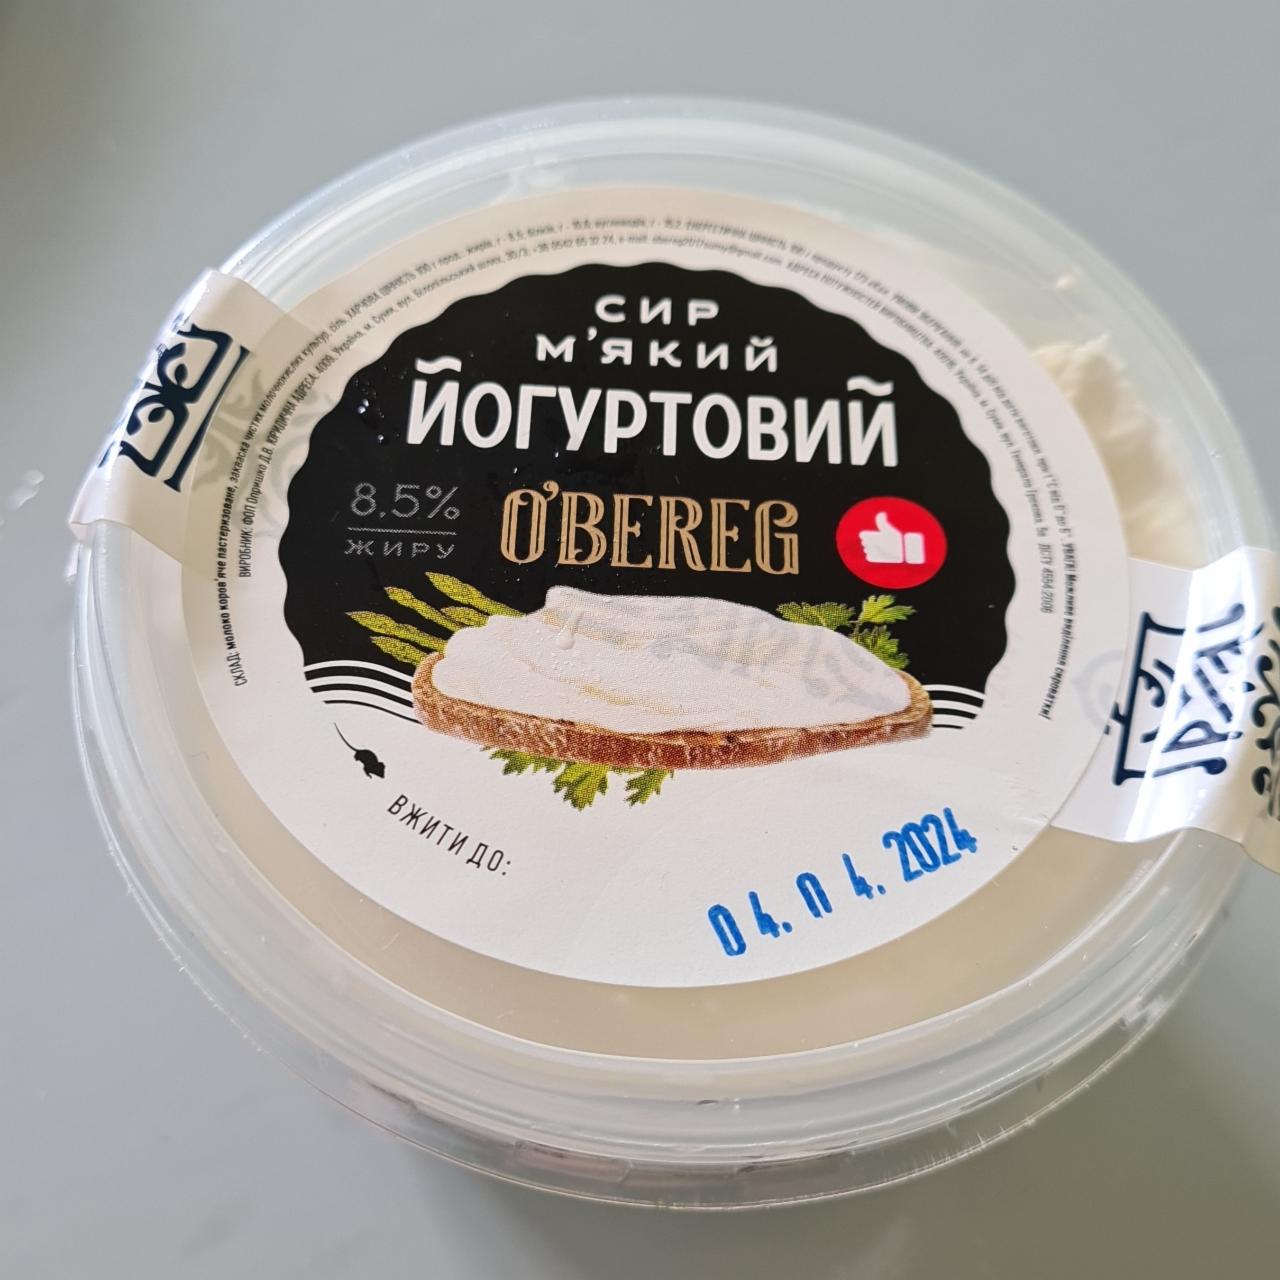 Фото - Сыр йогуртовый 8,5% O'bereg